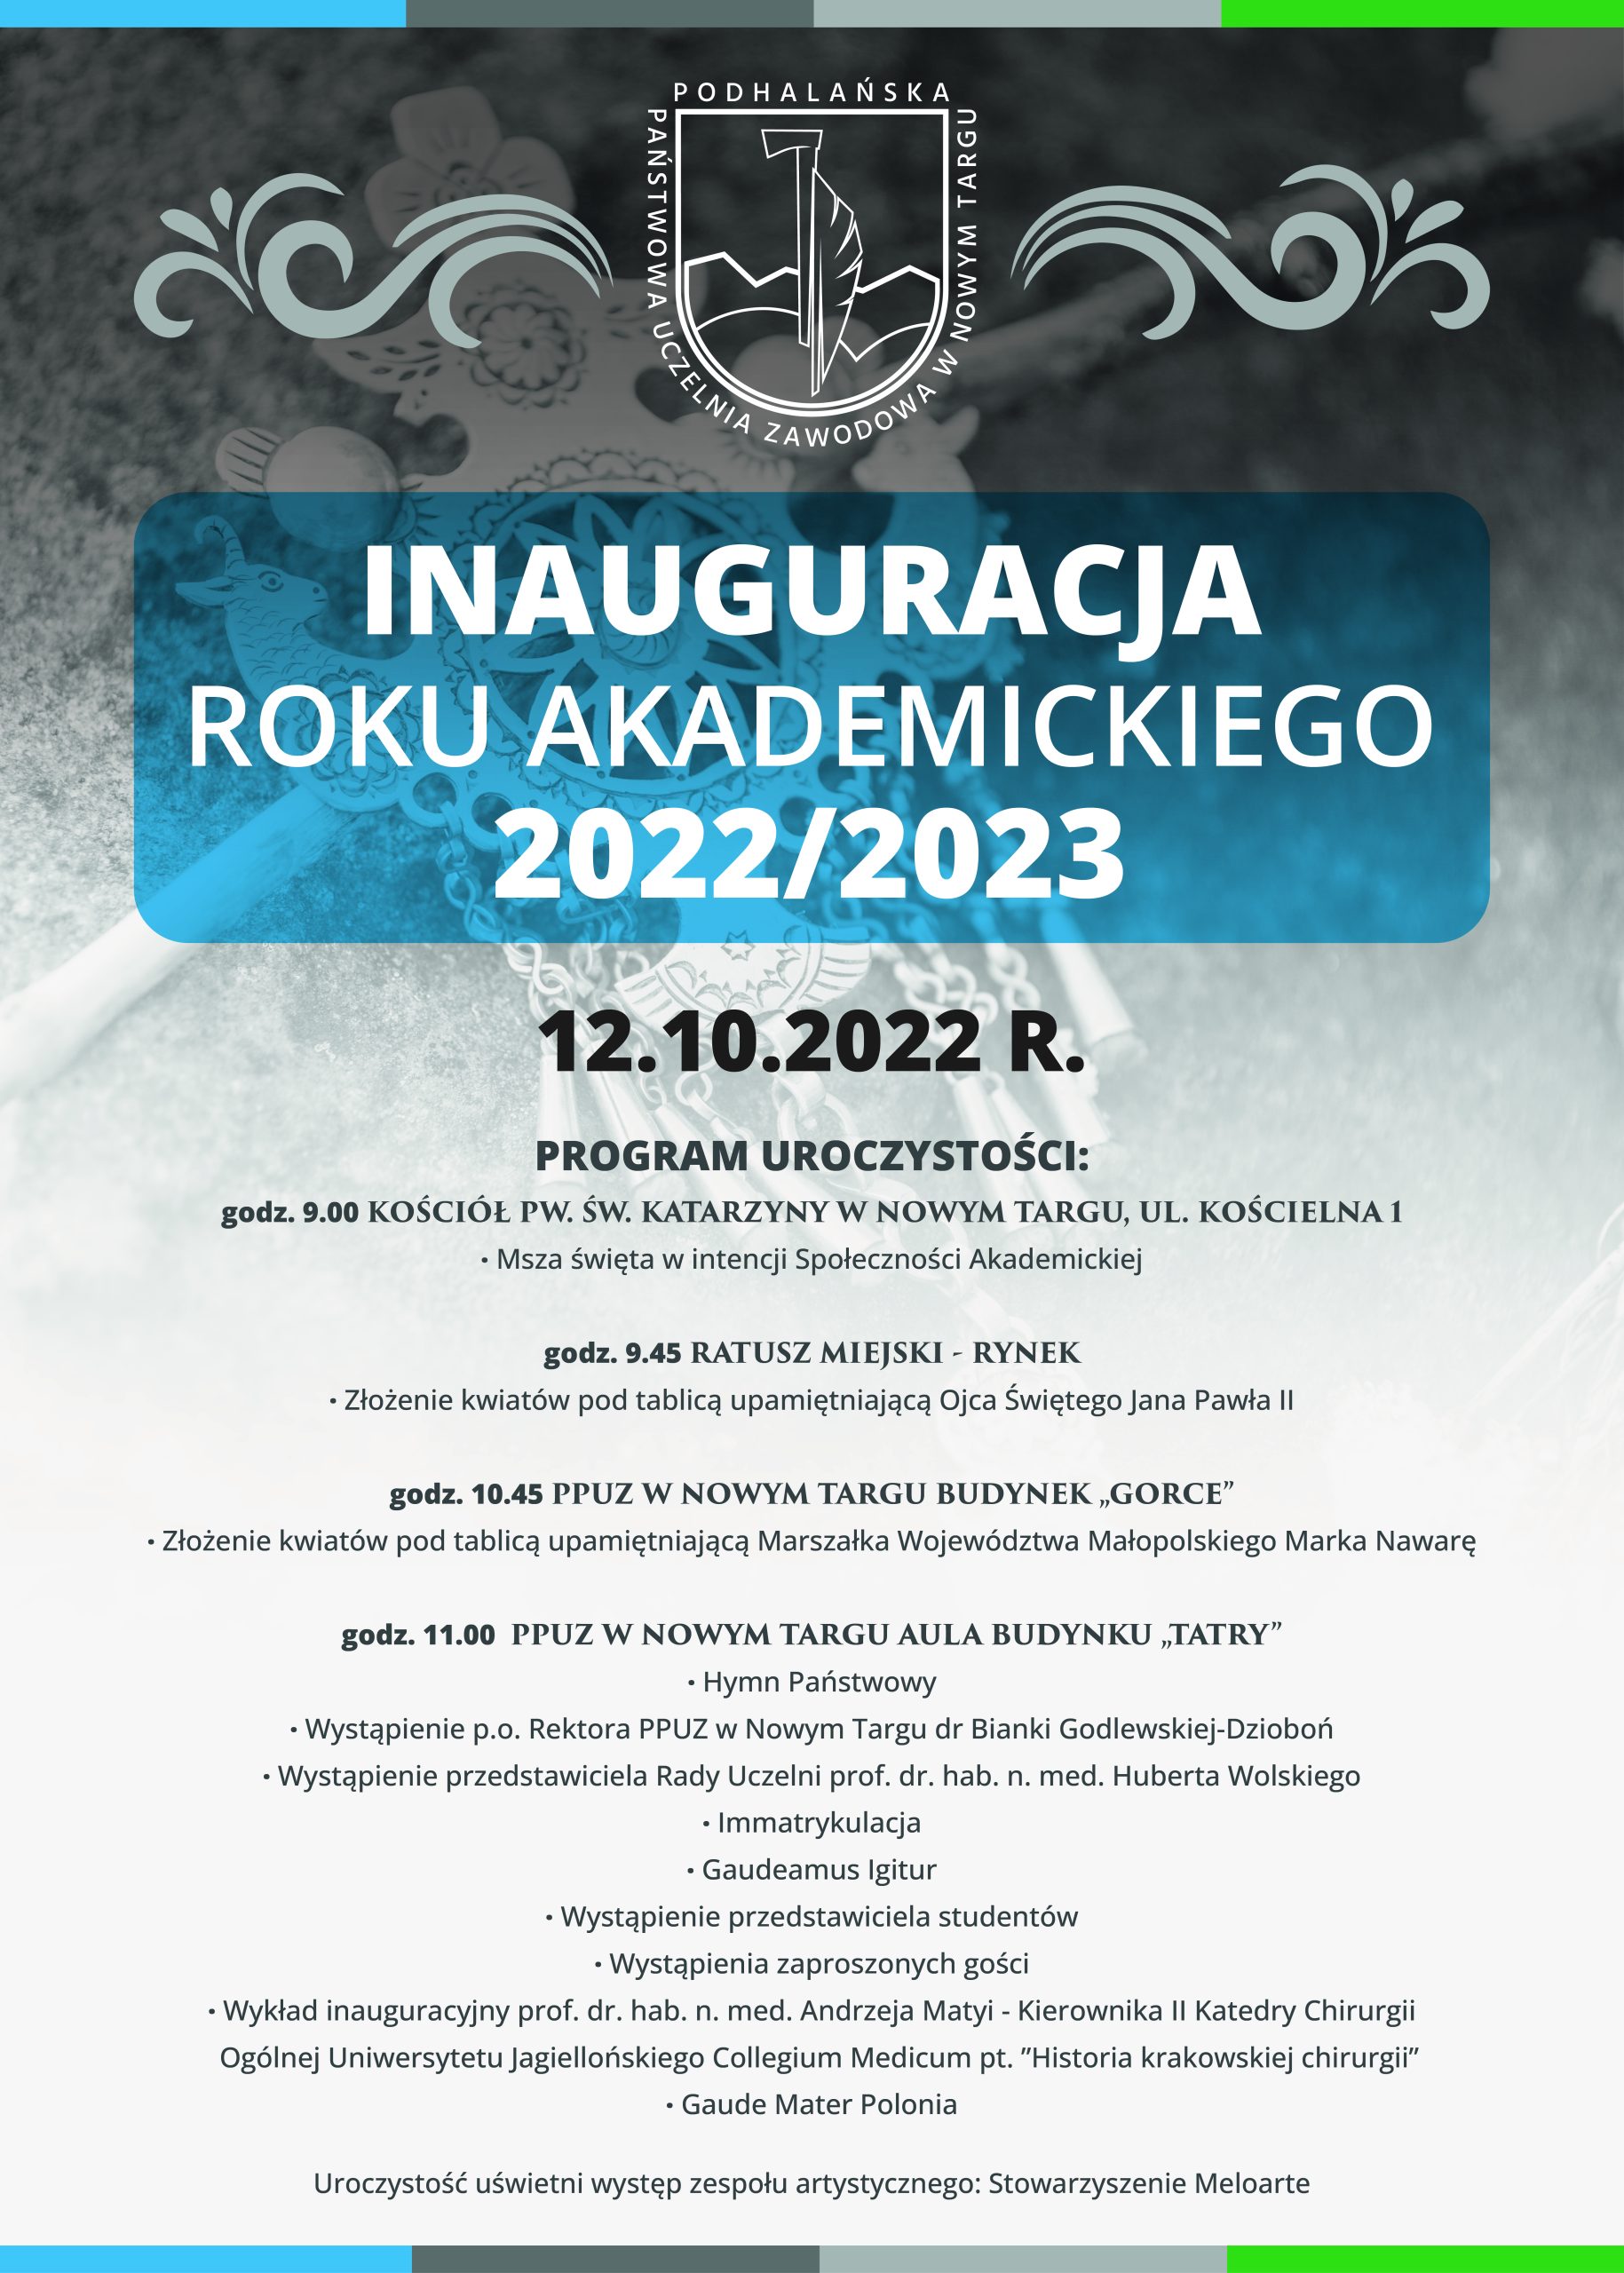 Inauguracja Roku Akademickiego 2022/2023 w Podhalańskiej Państwowej Uczelni Zawodowej w Nowym Targu.